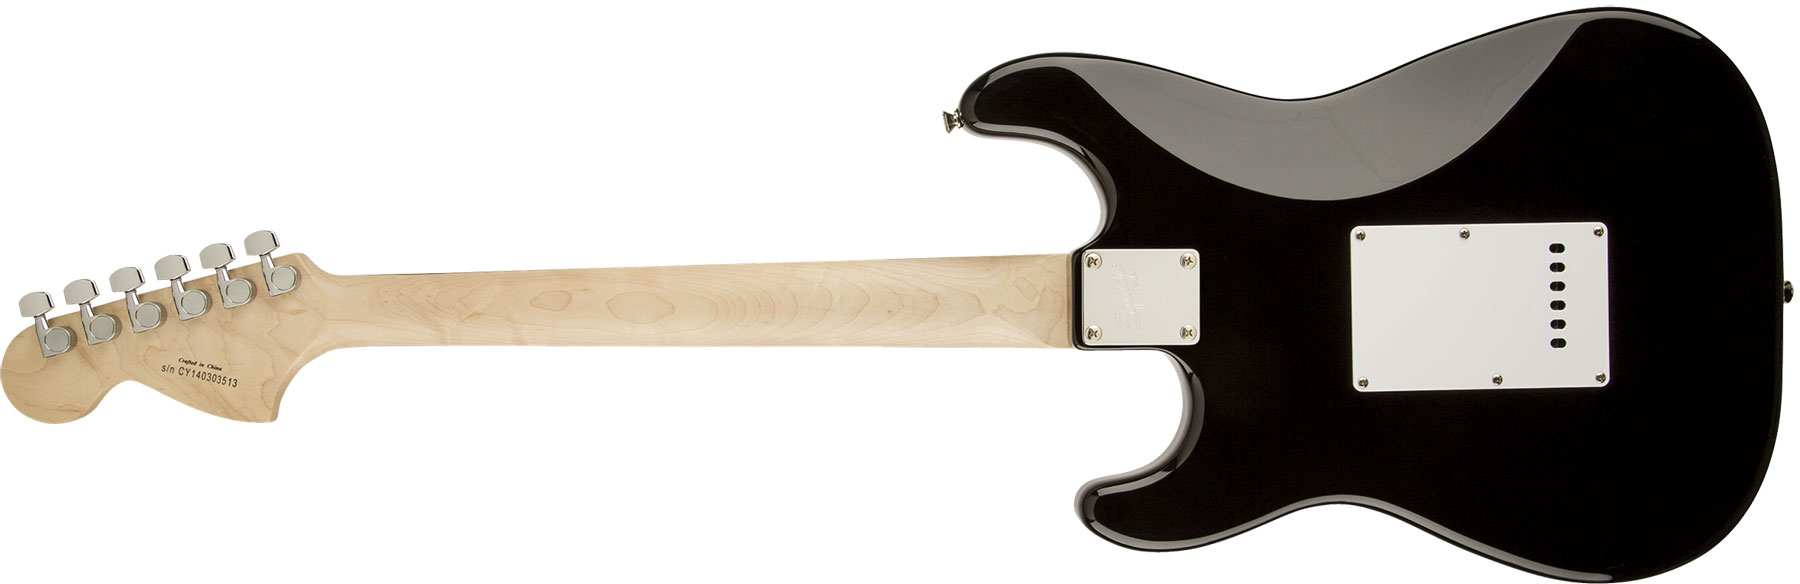 Squier Strat Affinity Series 3s Lau - Black - Guitarra eléctrica con forma de str. - Variation 1